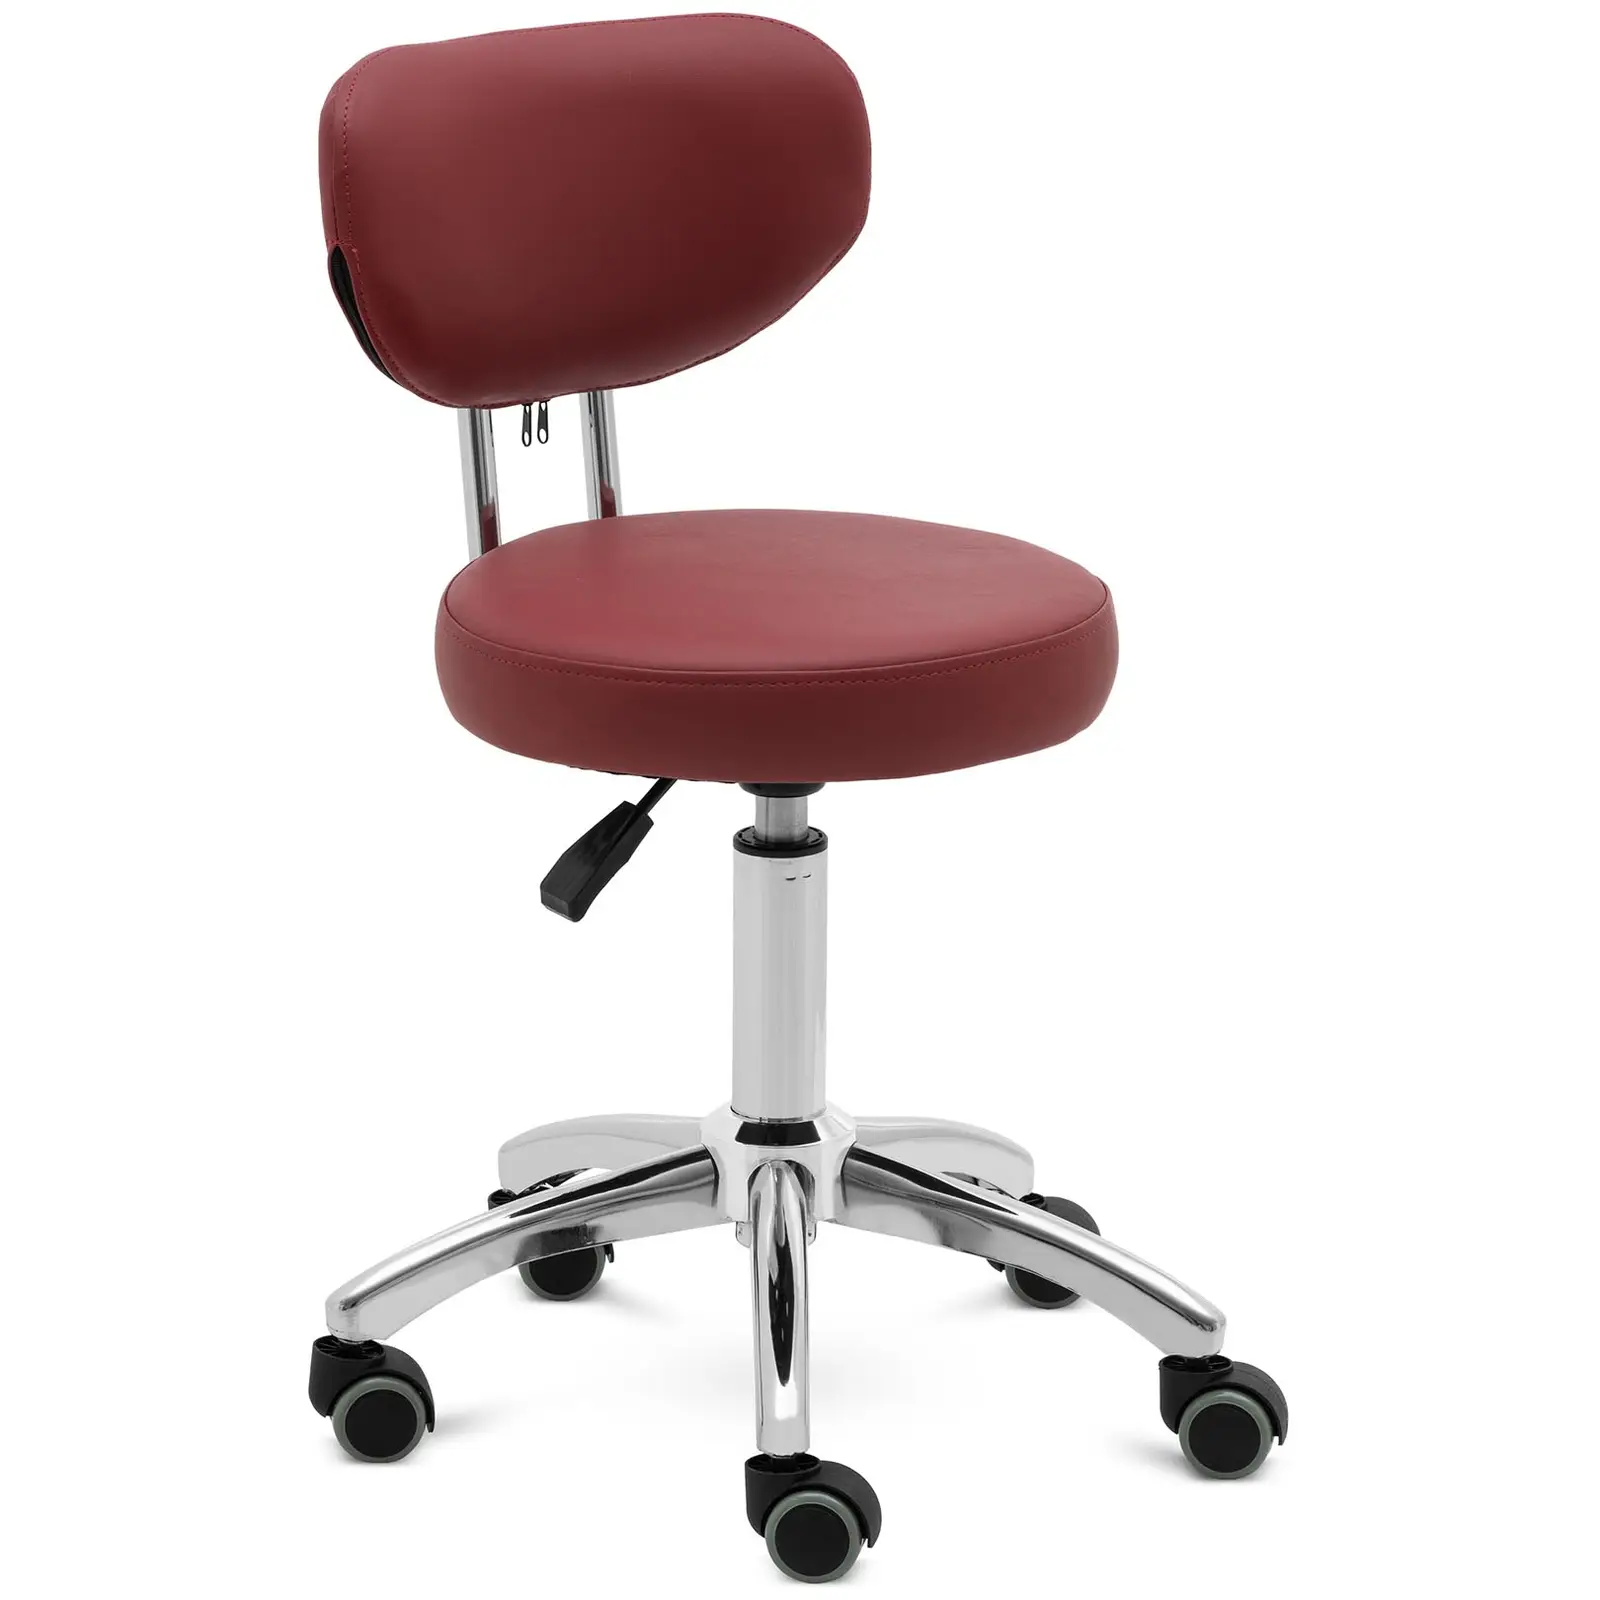 Roller stool with backrest - 46 - 60 cm - 150 kg - burgundy